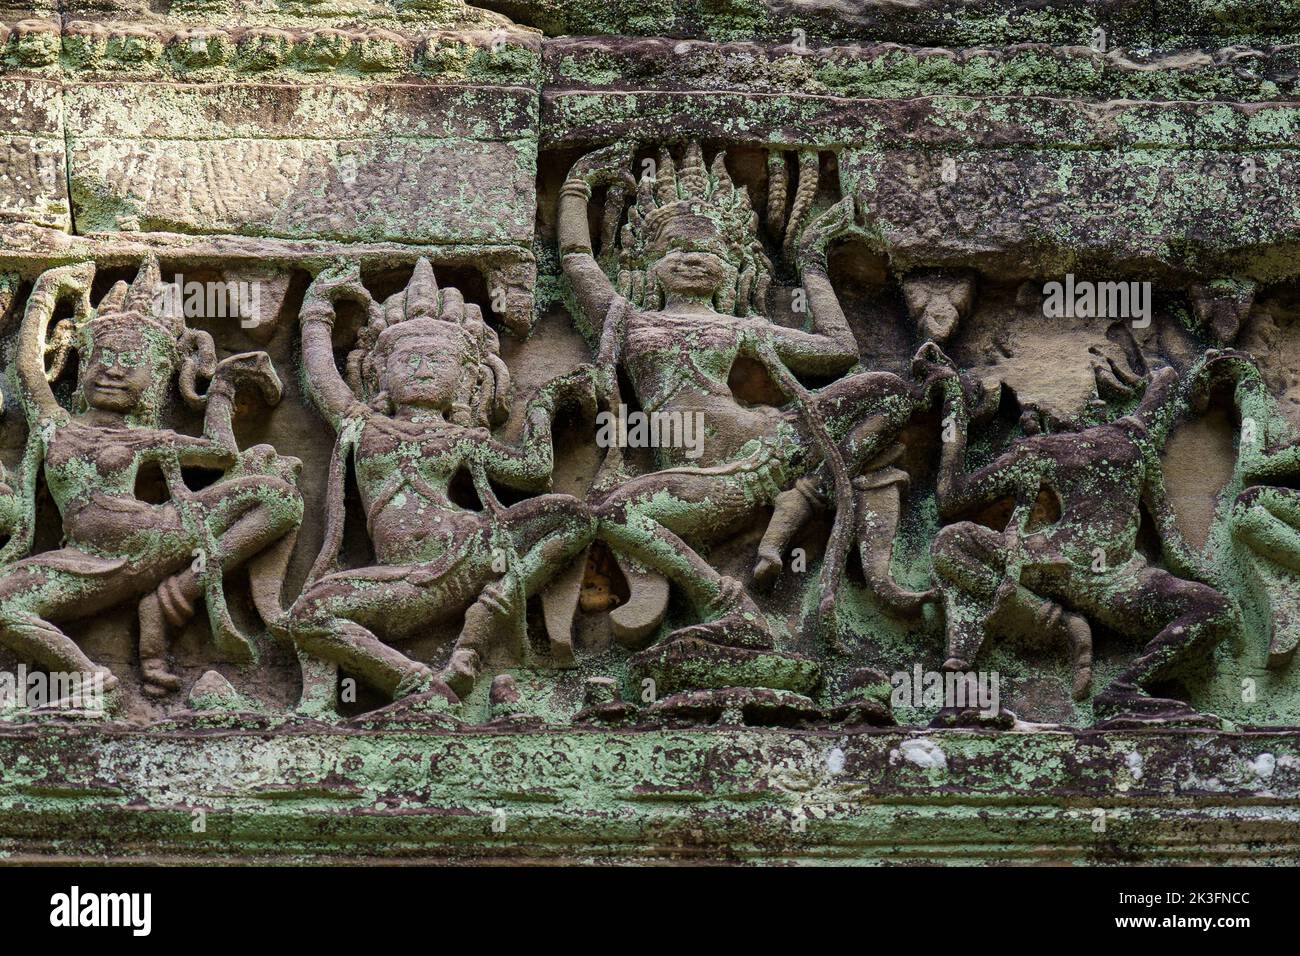 Camboya. Siem Riep. El parque arqueológico de Angkor. Una escultura en bajorrelieve de la bailarina apsara en Preah Khan siglo 12th templo hindú Foto de stock